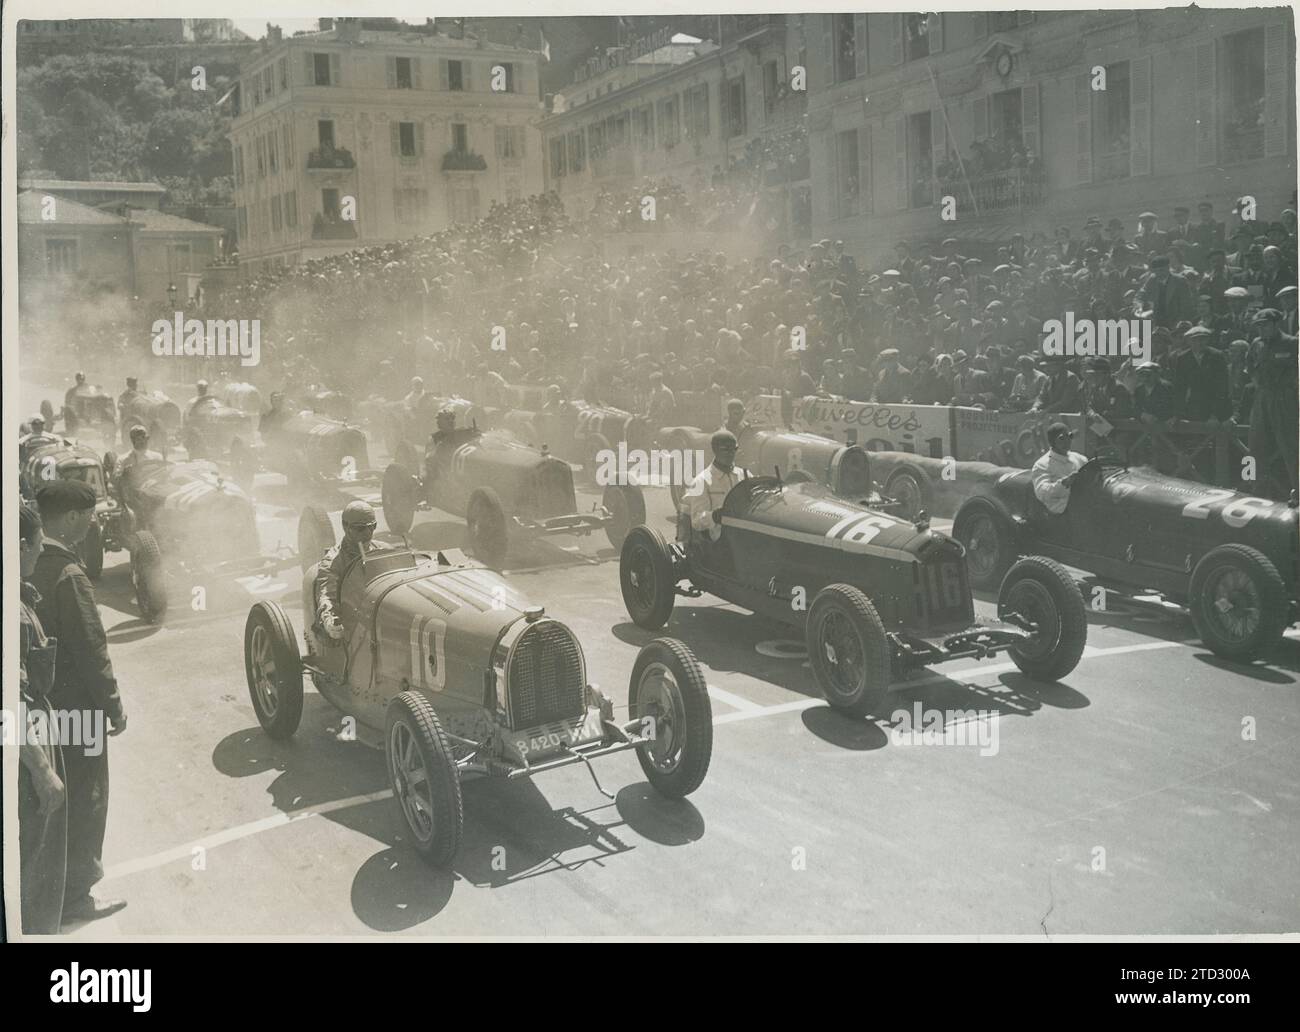 Monaco, 23/04/1933. Gran Premio di Monaco. Momento di partenza con i piloti, da sinistra a destra, Achille Varzi, Louis Chiron e Baconin Borzacchini. Crediti: Album / Archivo ABC Foto Stock